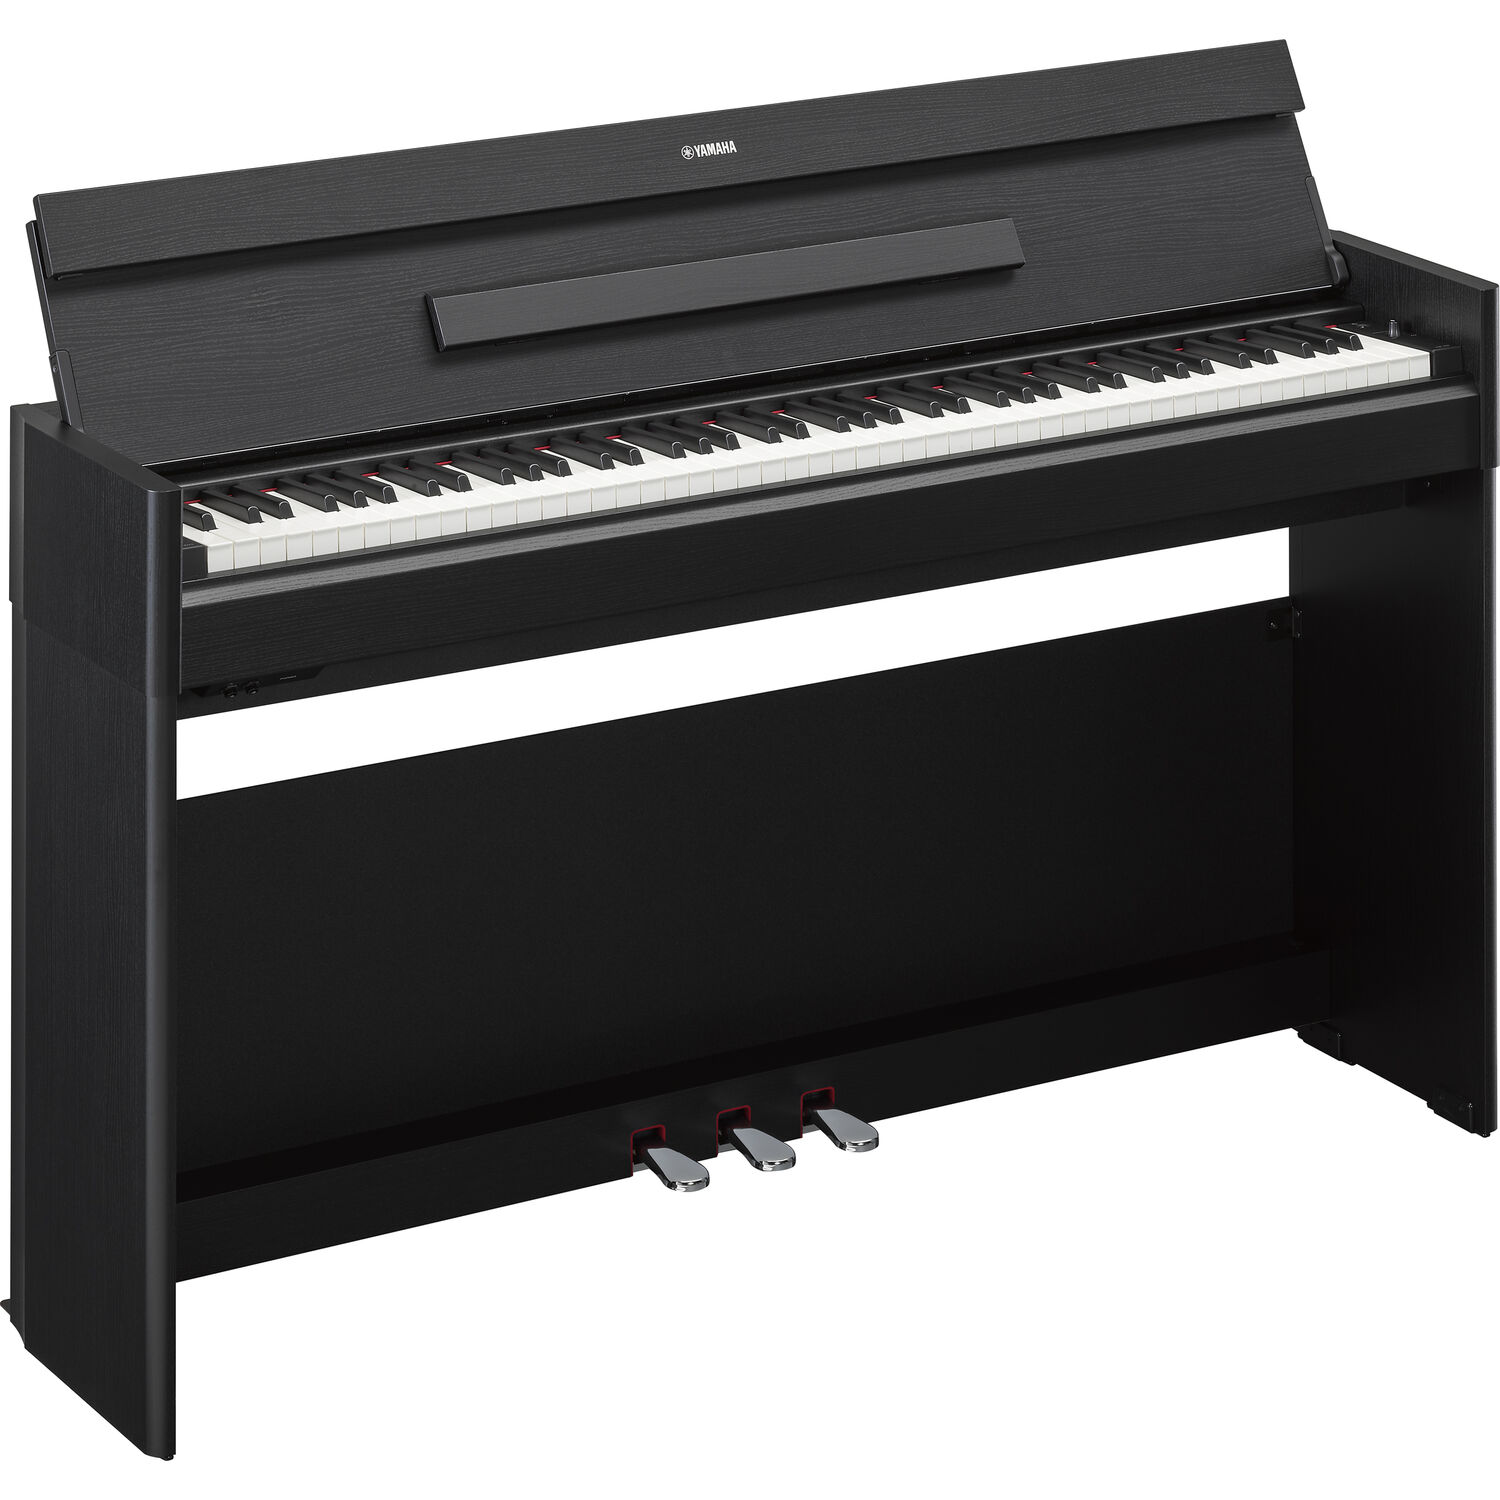 Piano Digital de Consola Yamaha Arius Ydp S55 de 88 Teclas con Cuerpo Delgado Negro